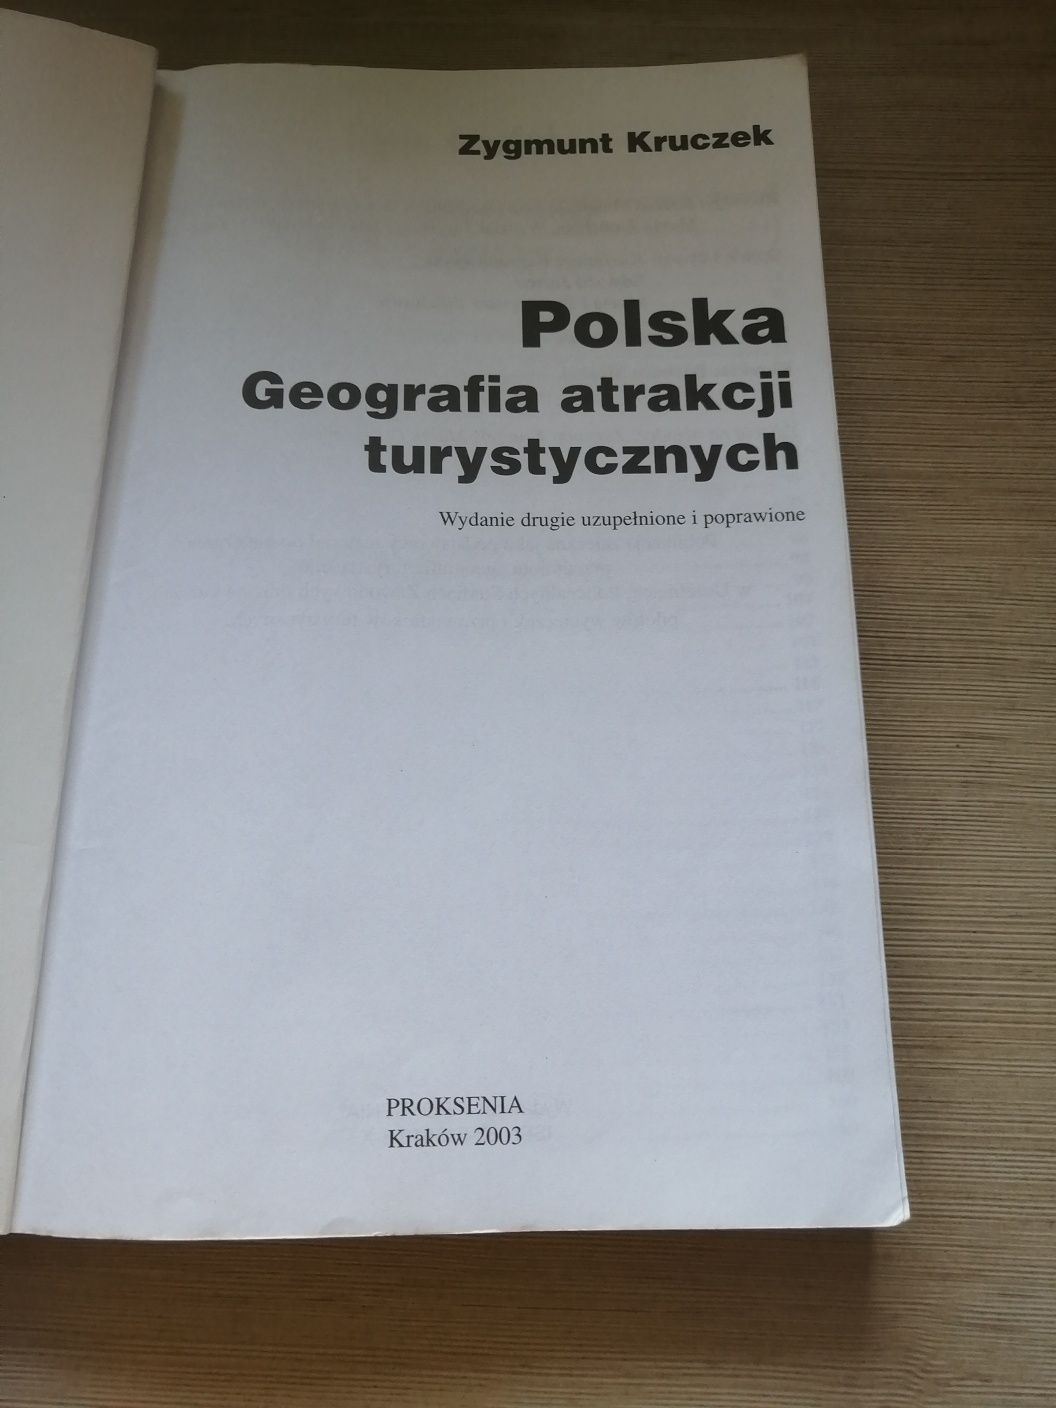 Polska Geografia atrakcji turystycznych Zygmunt Kruczek Proksenia